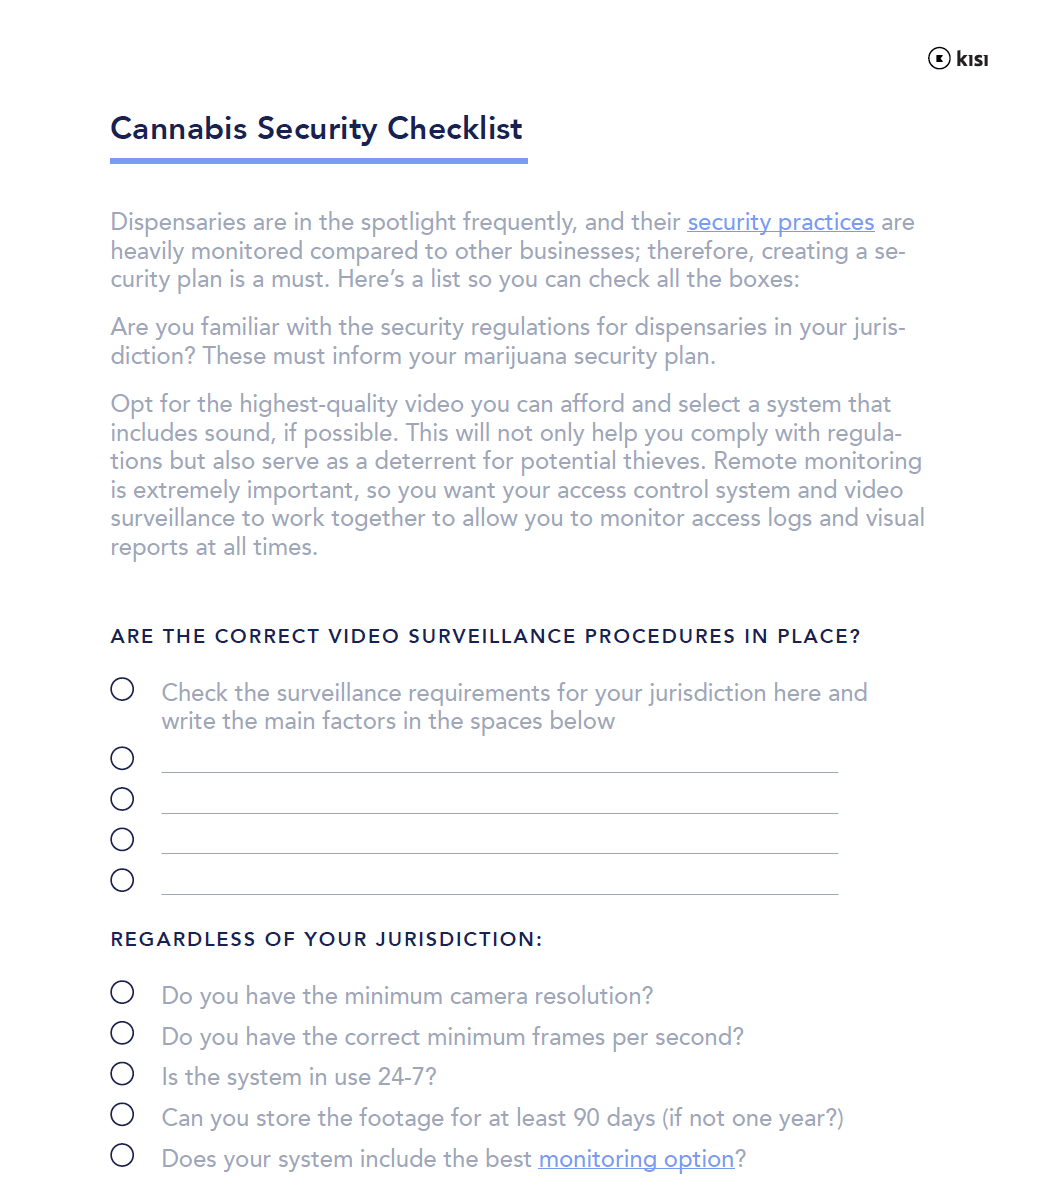 Security Checklist for Cannabis Grow Facilities